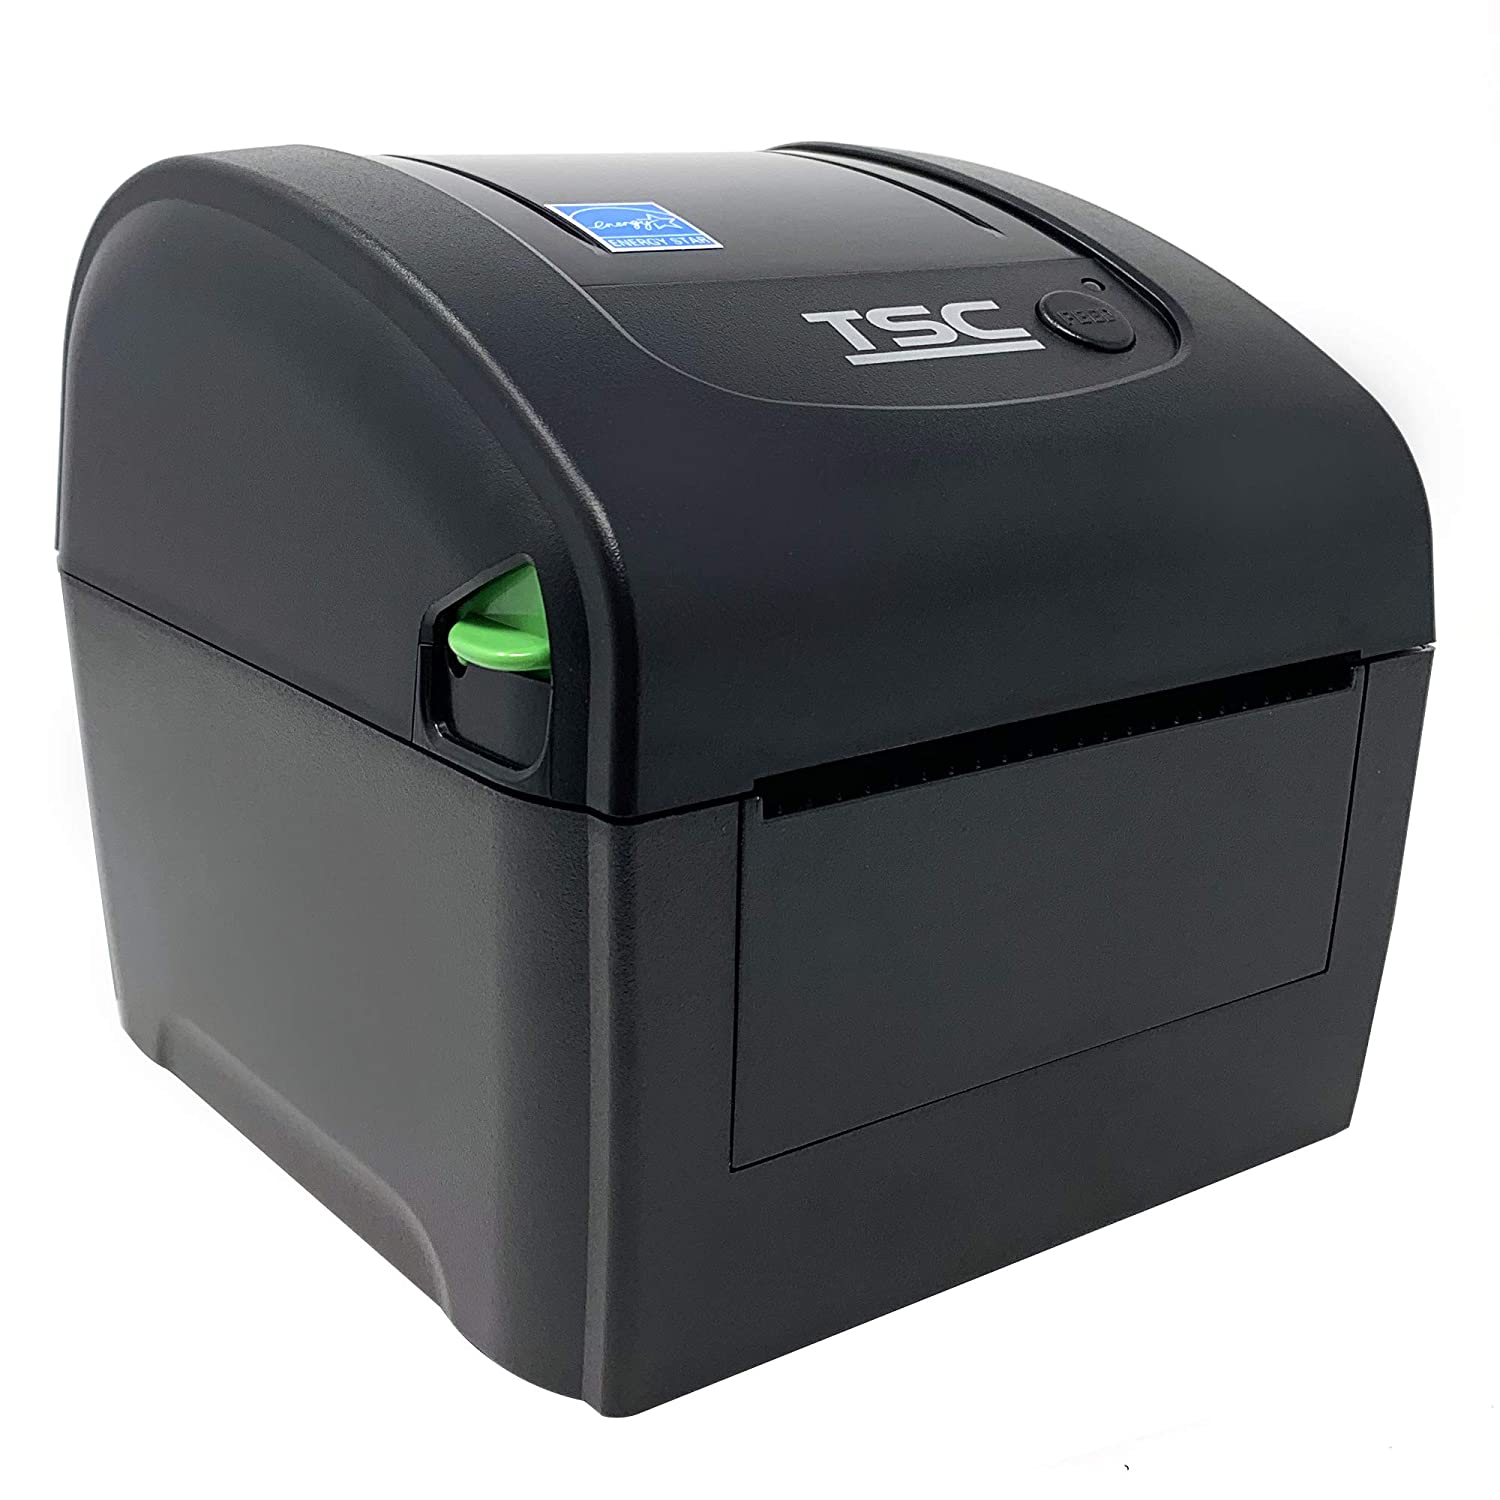 TSC DA 310 thermal desktop printer